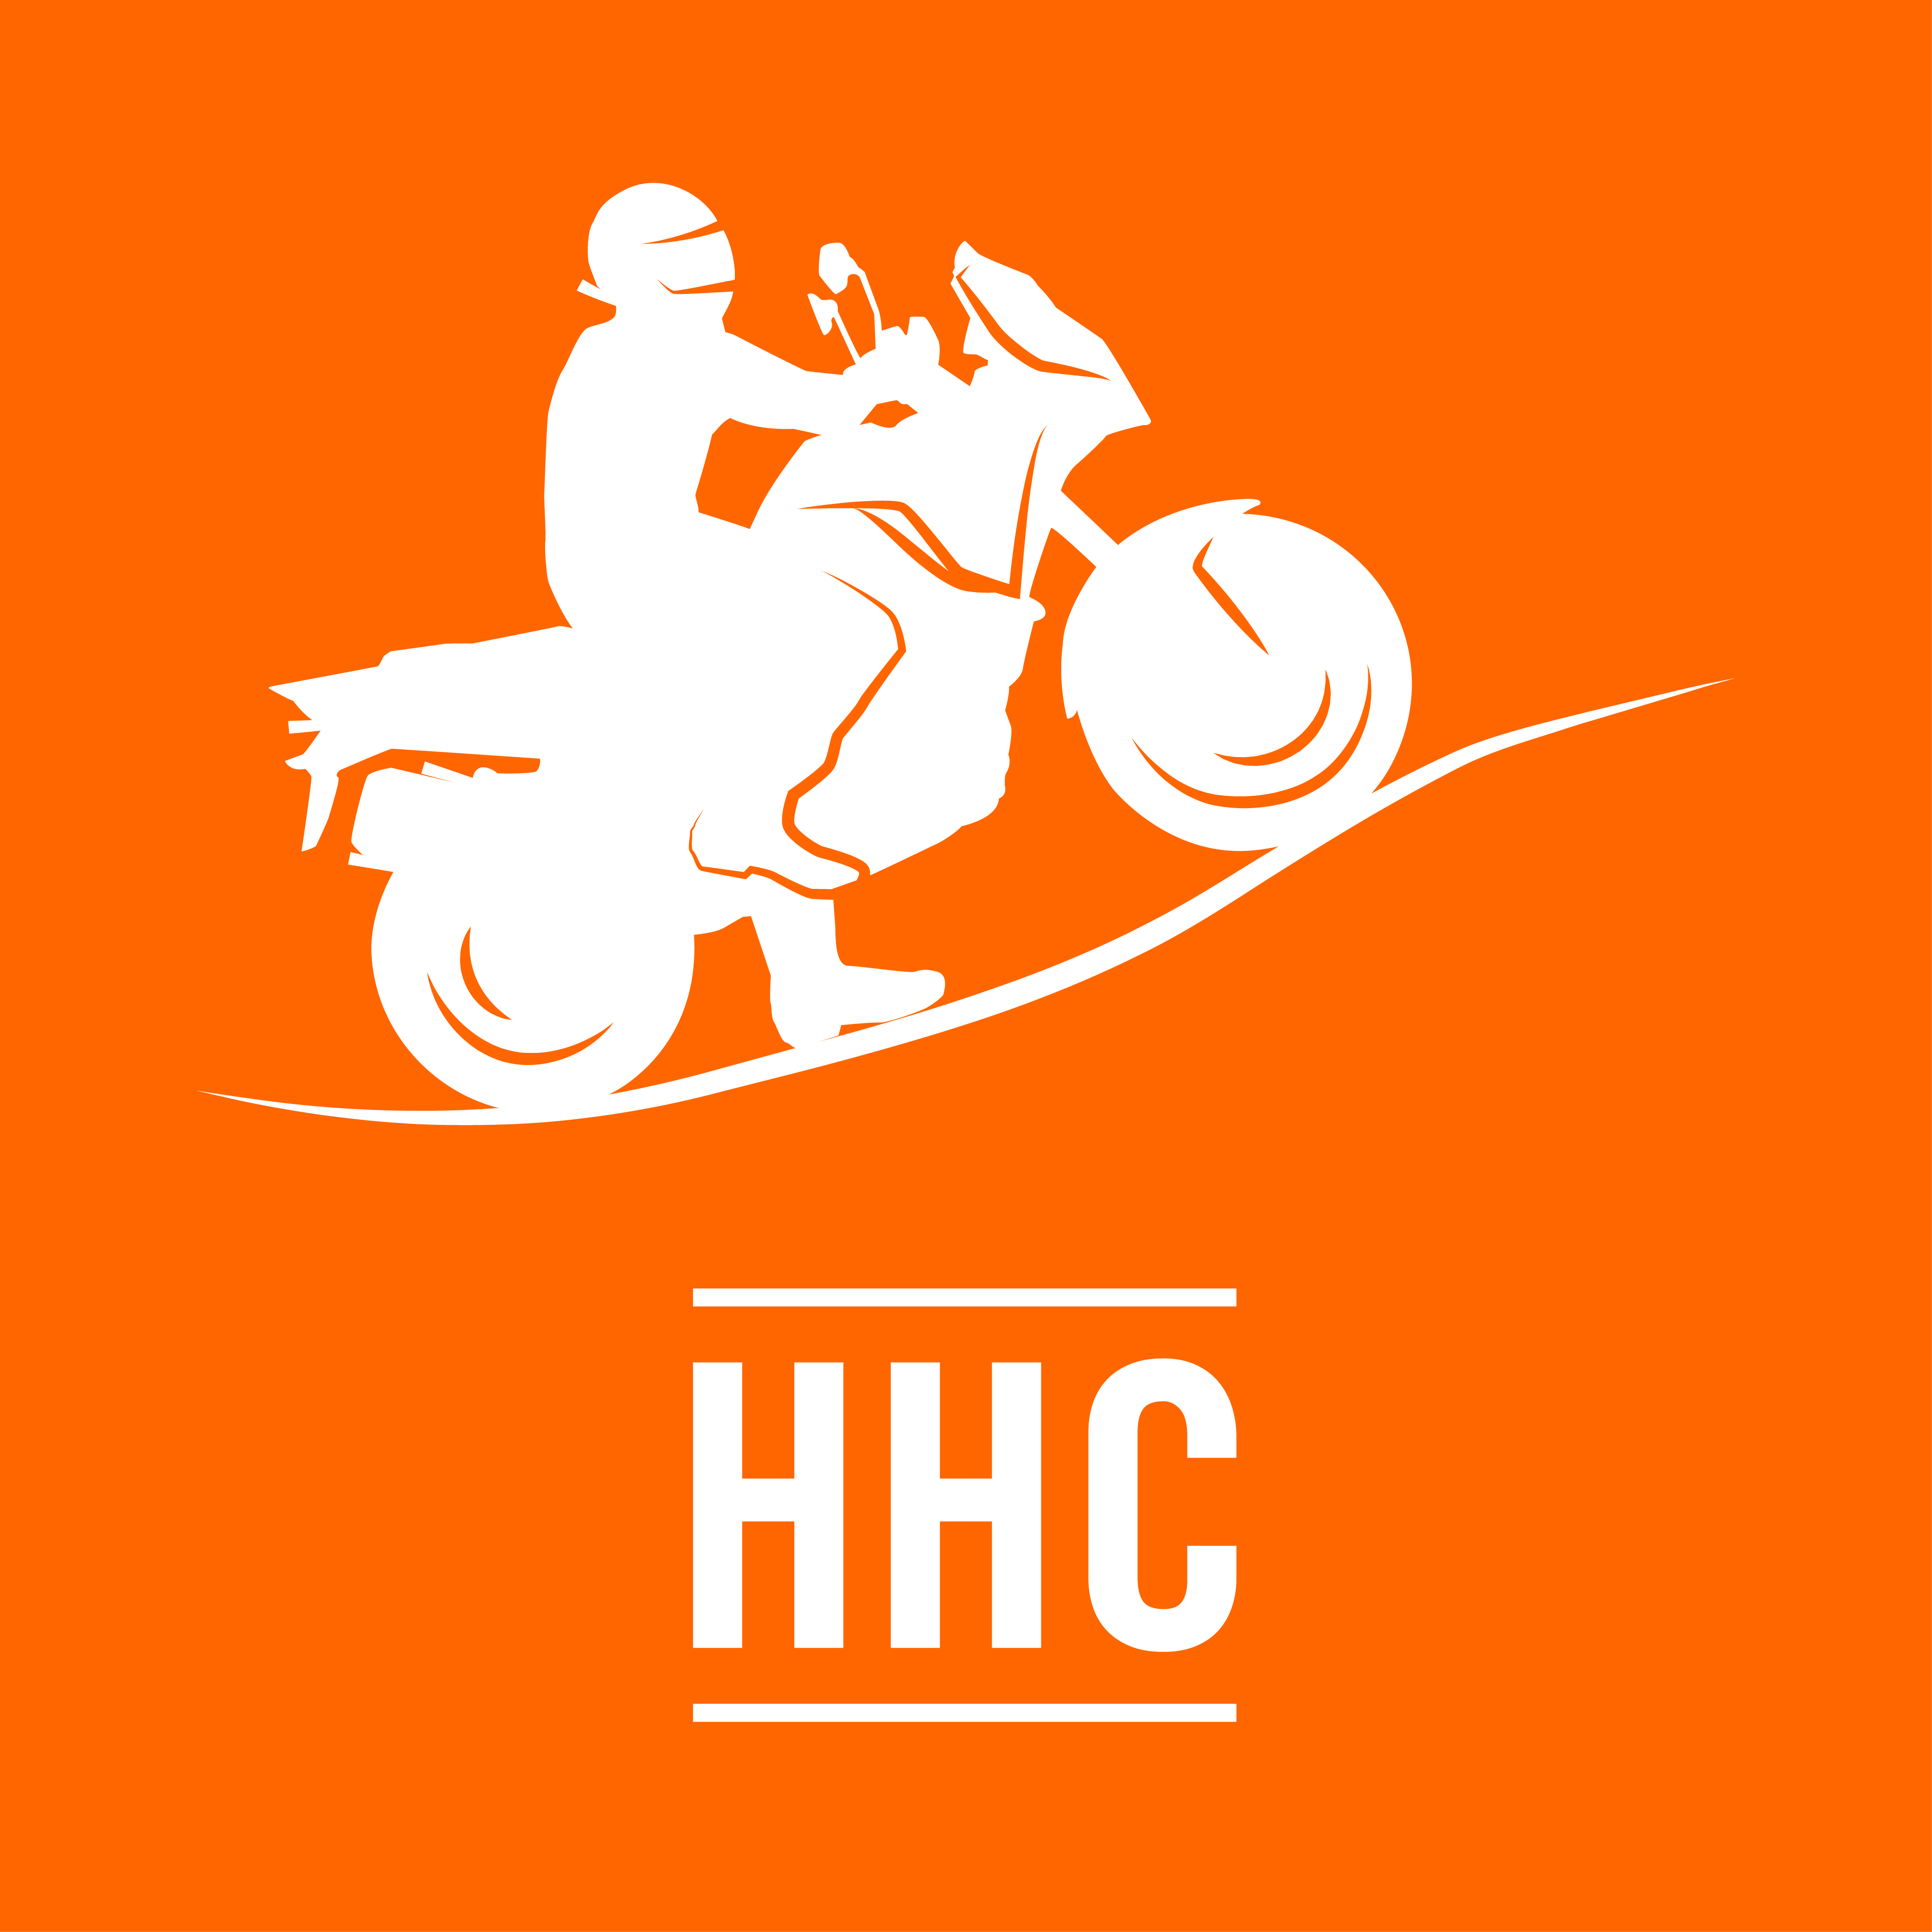 Sistema de ayuda al arranque en pendiente (HHC)